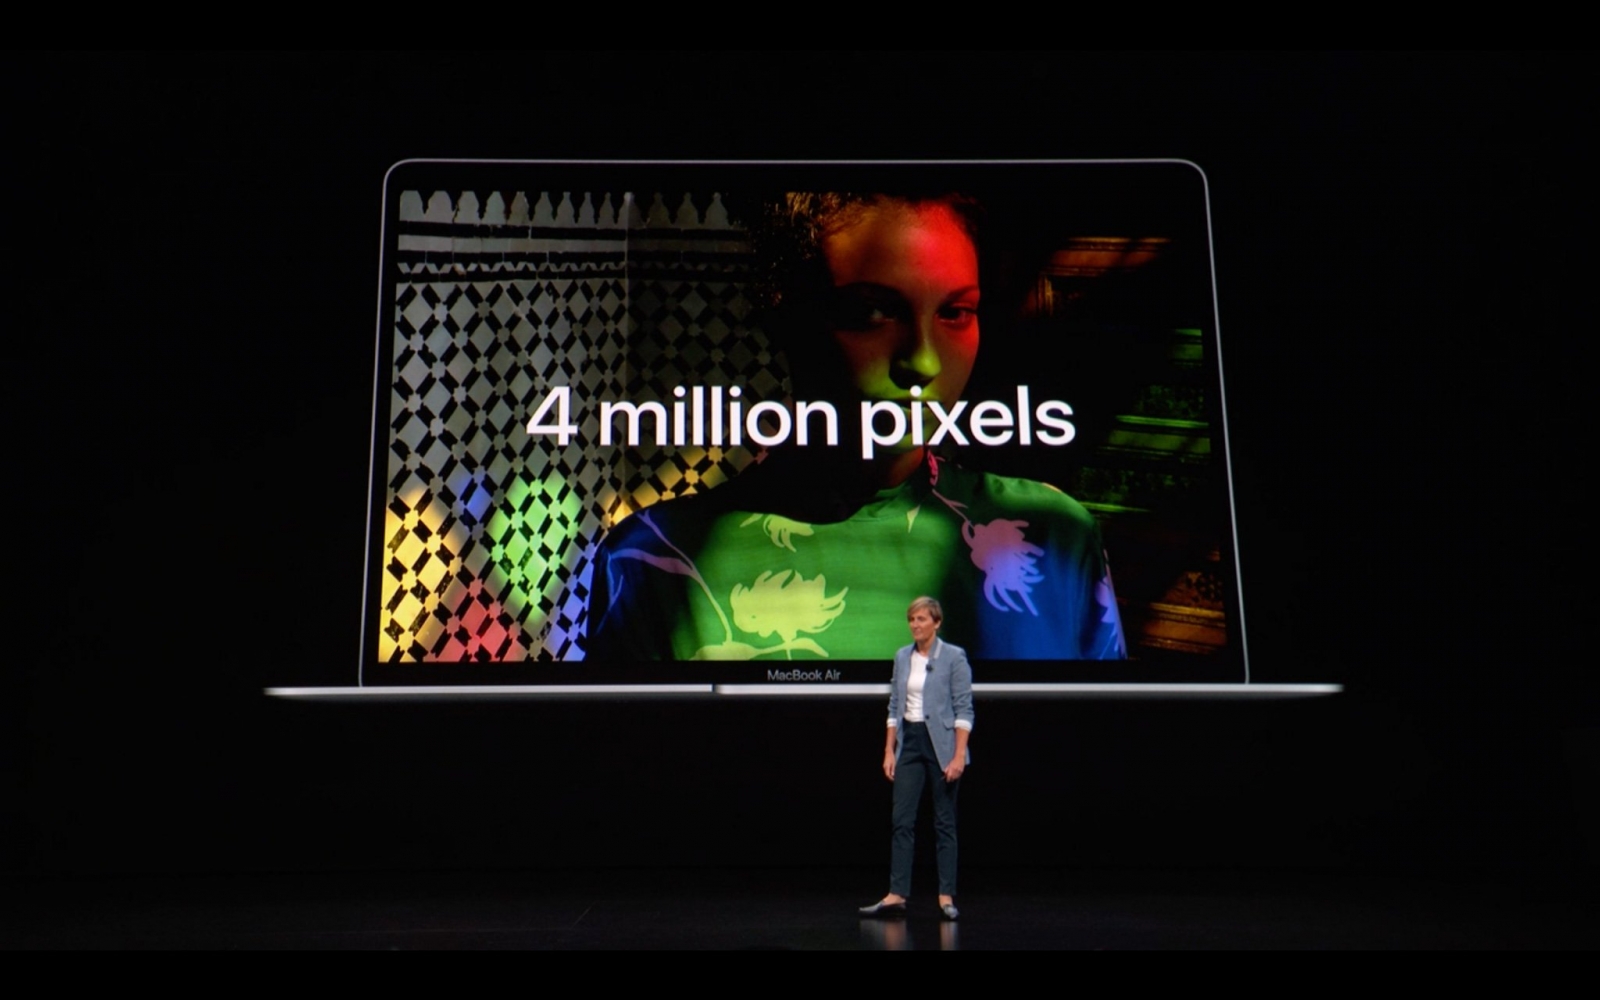 Số điểm ảnh trên màn hình 13"3 của Macbook Air mới là 4 triệu điểm ảnh. Đạt khoảng 300 điểm ảnh trên mỗi ". Tức là anh em khó có thể nhìn thấy điểm ảnh ở khoảng cách nhìn bình thường